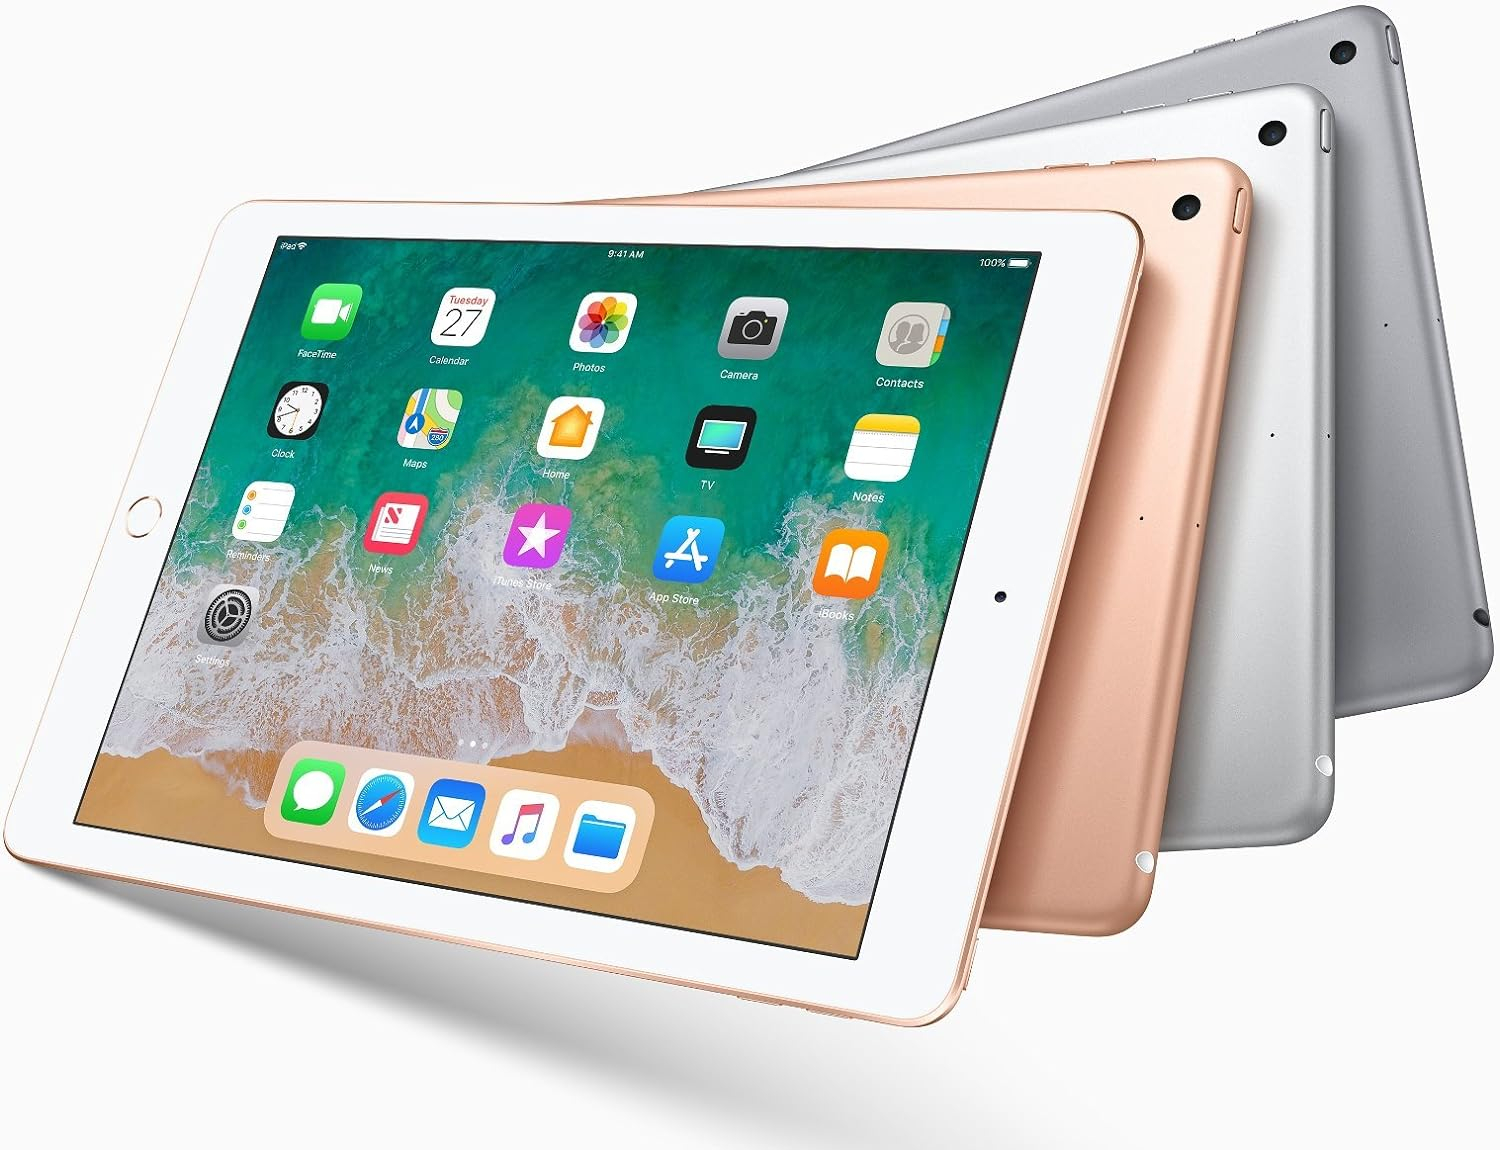 2018 Apple iPad 6th Gen (9.7- inch, Wi-Fi, 128GB)- Space gray (Renewed)